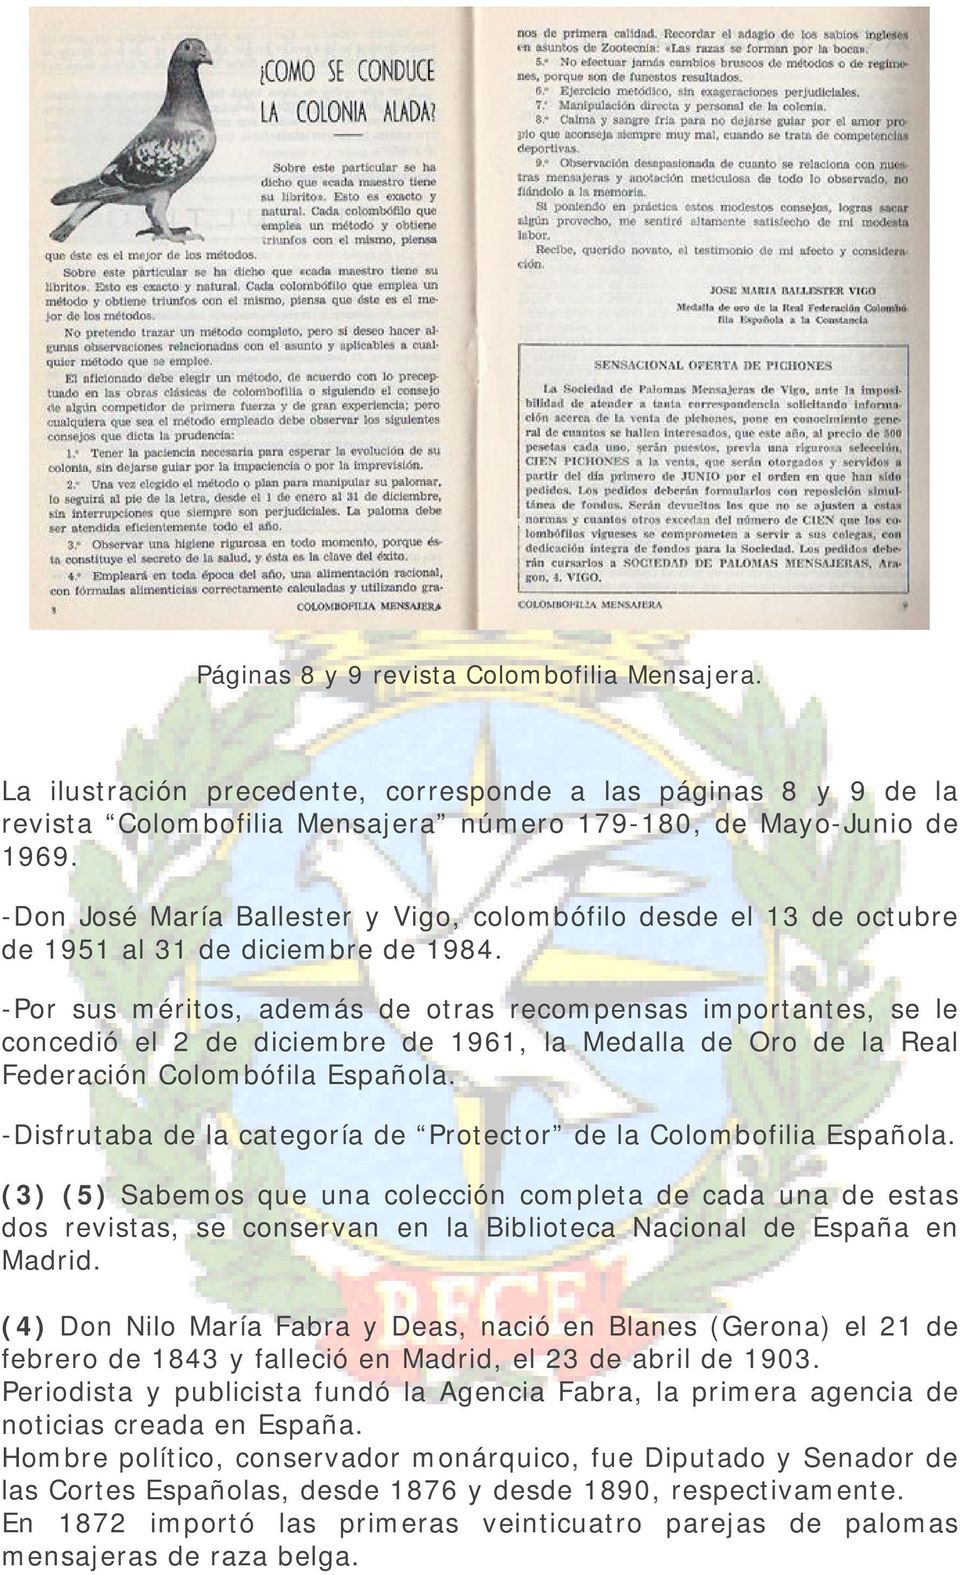 -Por sus méritos, además de otras recompensas importantes, se le concedió el 2 de diciembre de 1961, la Medalla de Oro de la Real Federación Colombófila Española.